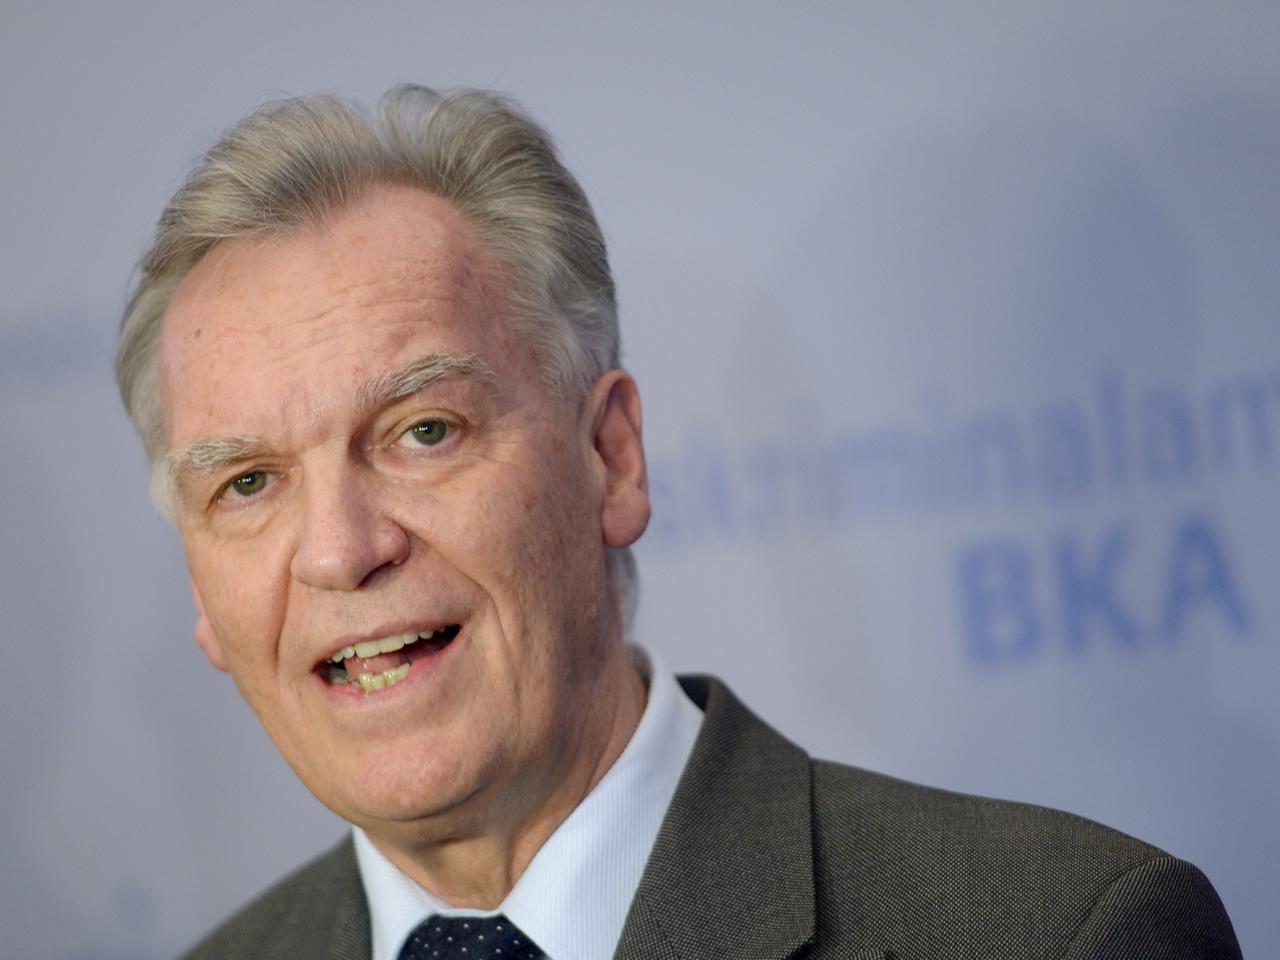 Jörg Ziercke, Präsident des Bundeskriminalamtes (BKA), äußert sich am 12.11.2013 während der BKA-Herbsttagung in den Rhein-Main-Hallen in Wiesbaden.